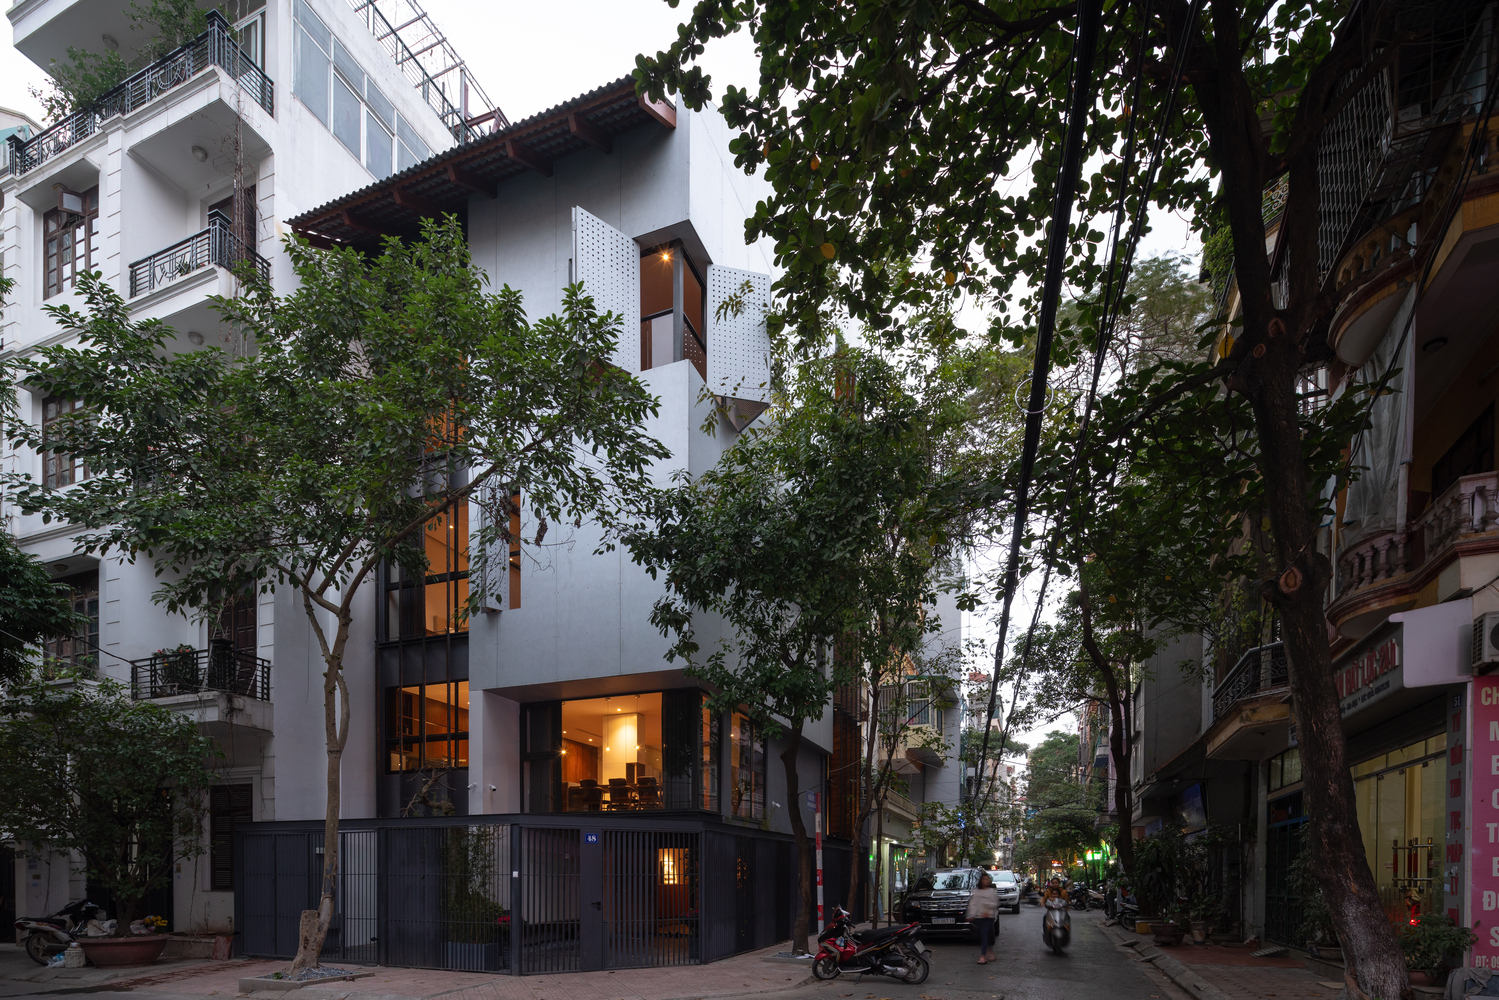 Hình ảnh cận cảnh mặt ngoài nhà phố 5 tầng ở Hà Nội